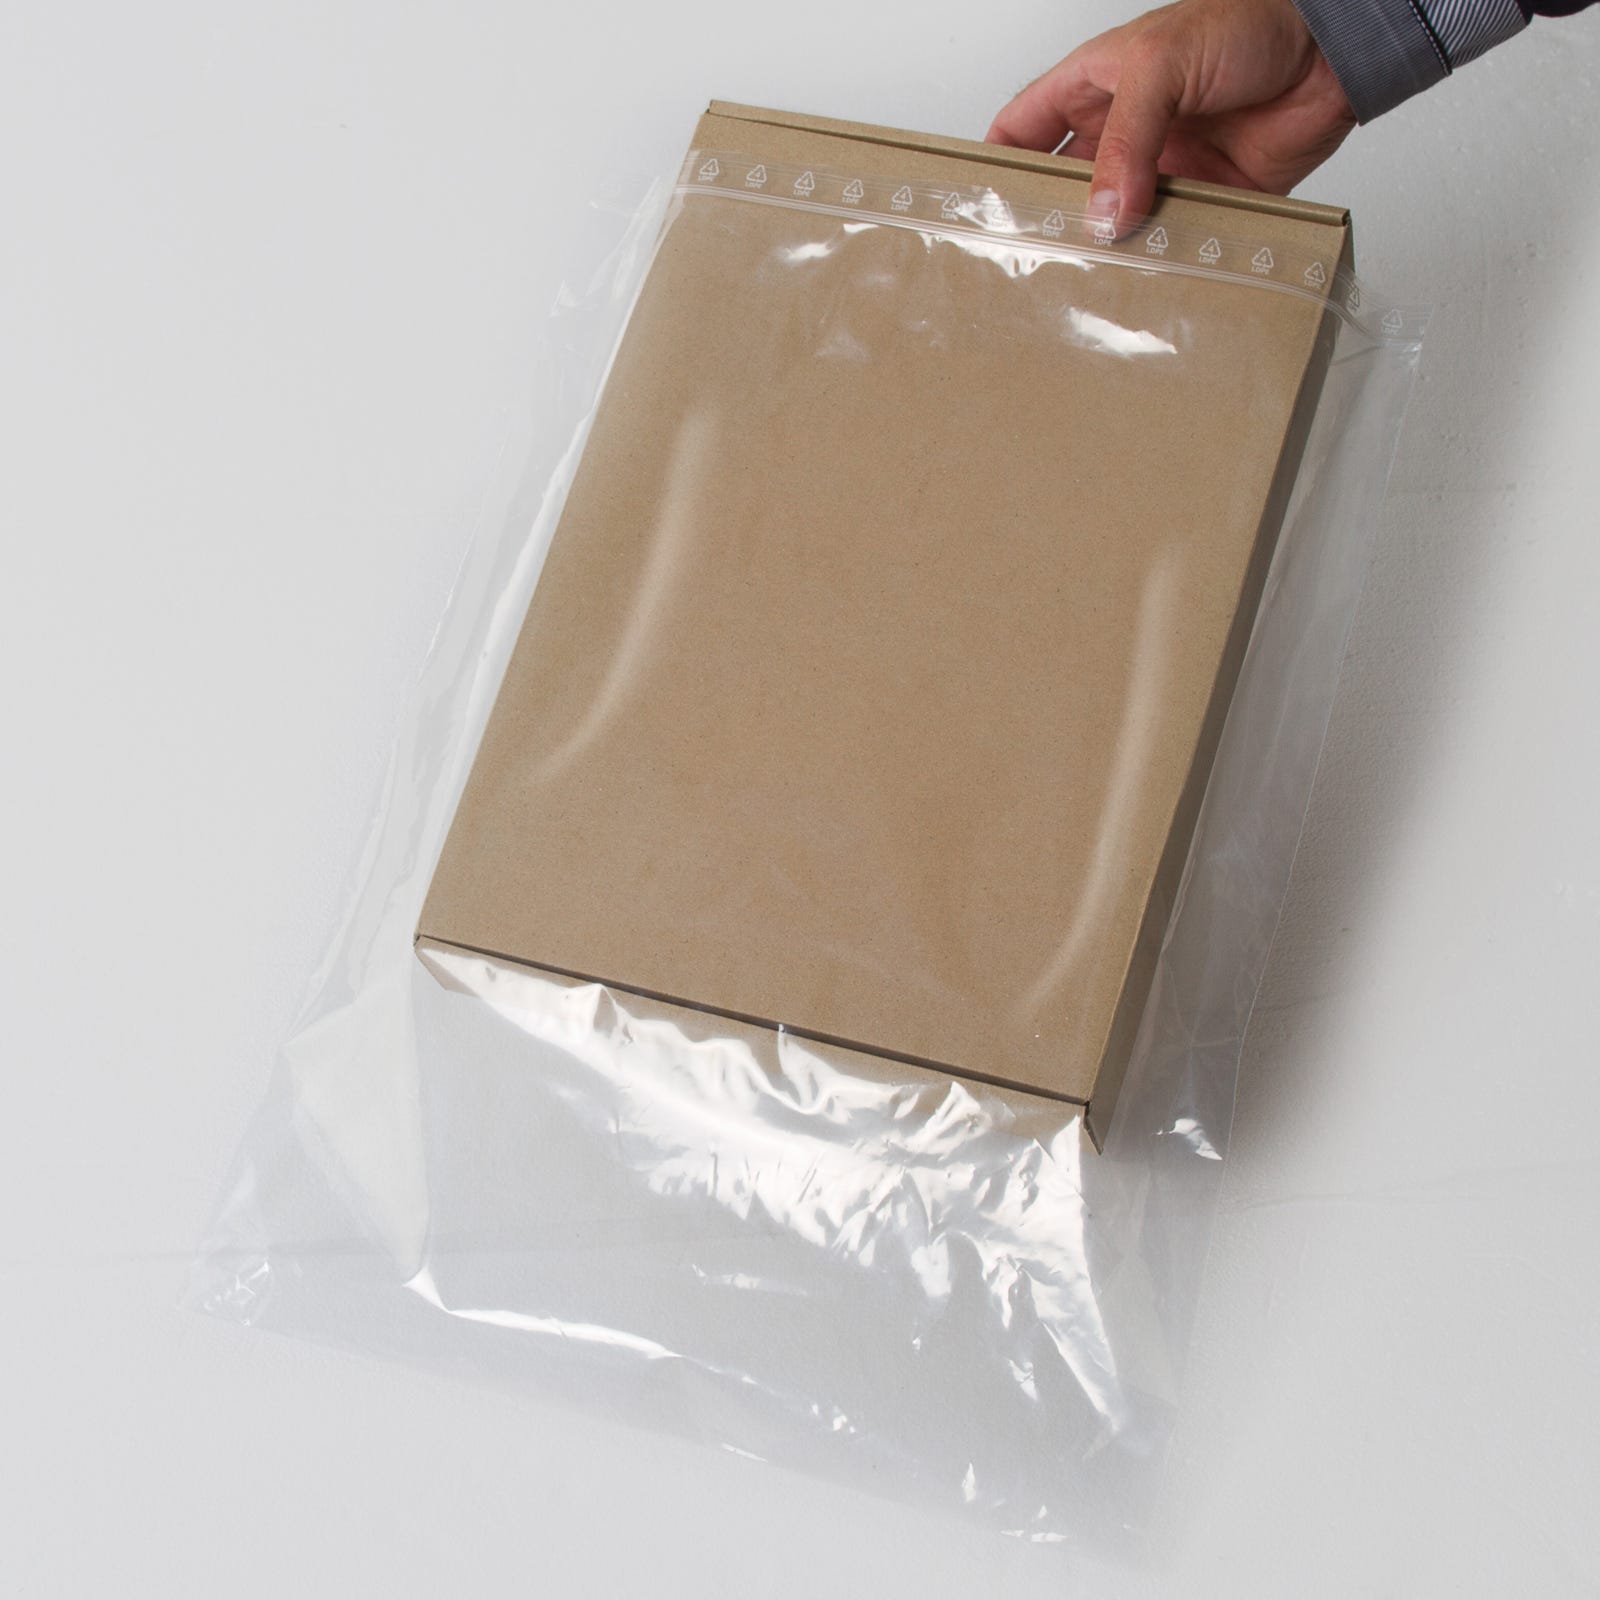 Sachet plastique fermeture zip - Achat / Vente de sachets plastique zip